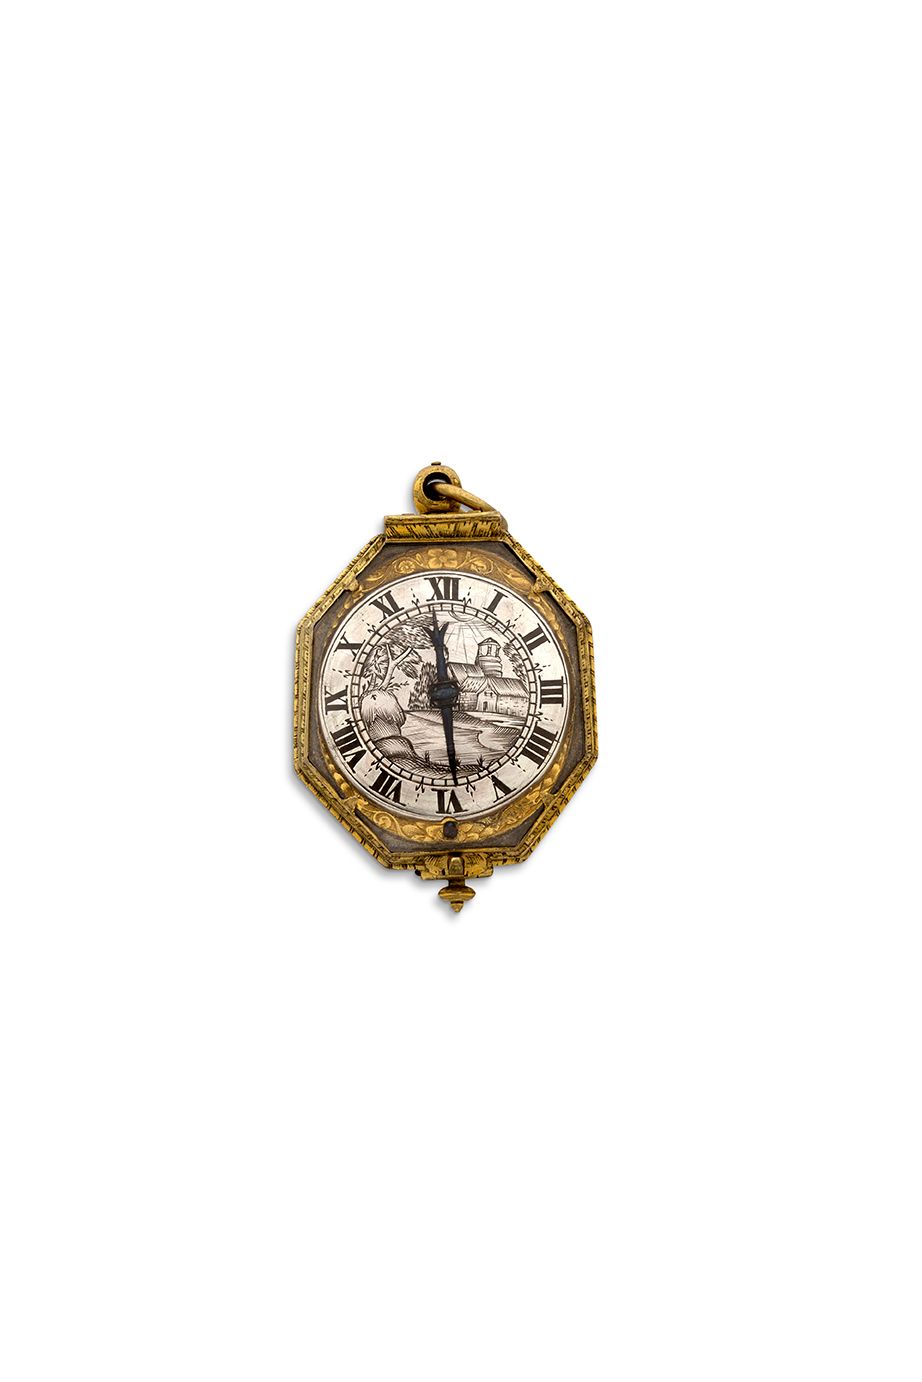 E STIENNE HUBERT, Rouen 
Reloj octogonal de metal dorado y cristal de roca con u&hellip;